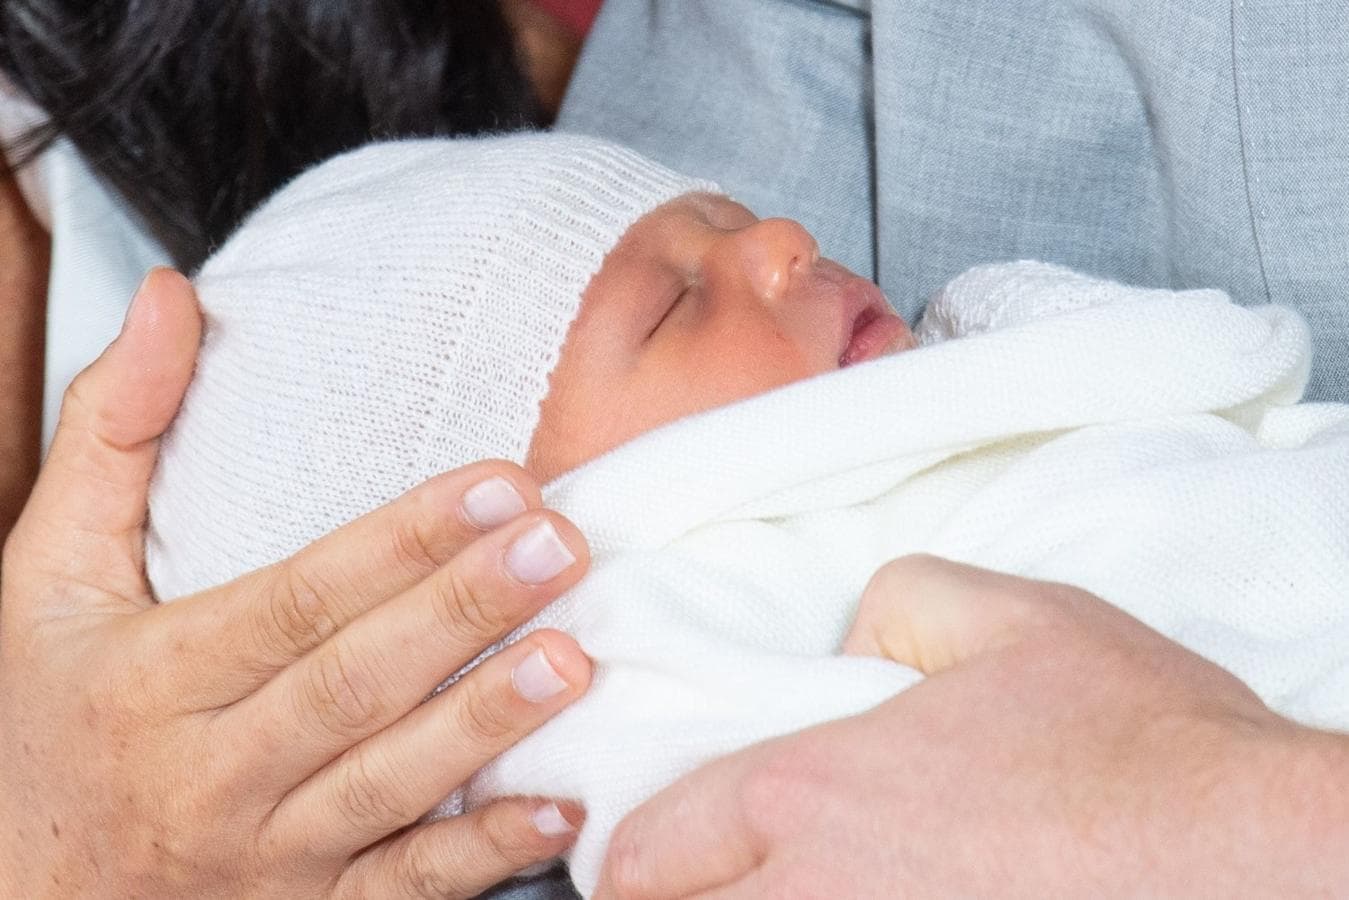 El príncipe Harry, duque de Sussex de Gran Bretaña, y su esposa Meghan, duquesa de Sussex, presentan a su hijo recién nacido Archie Harrison en el castillo de Windsor, Reino Unido